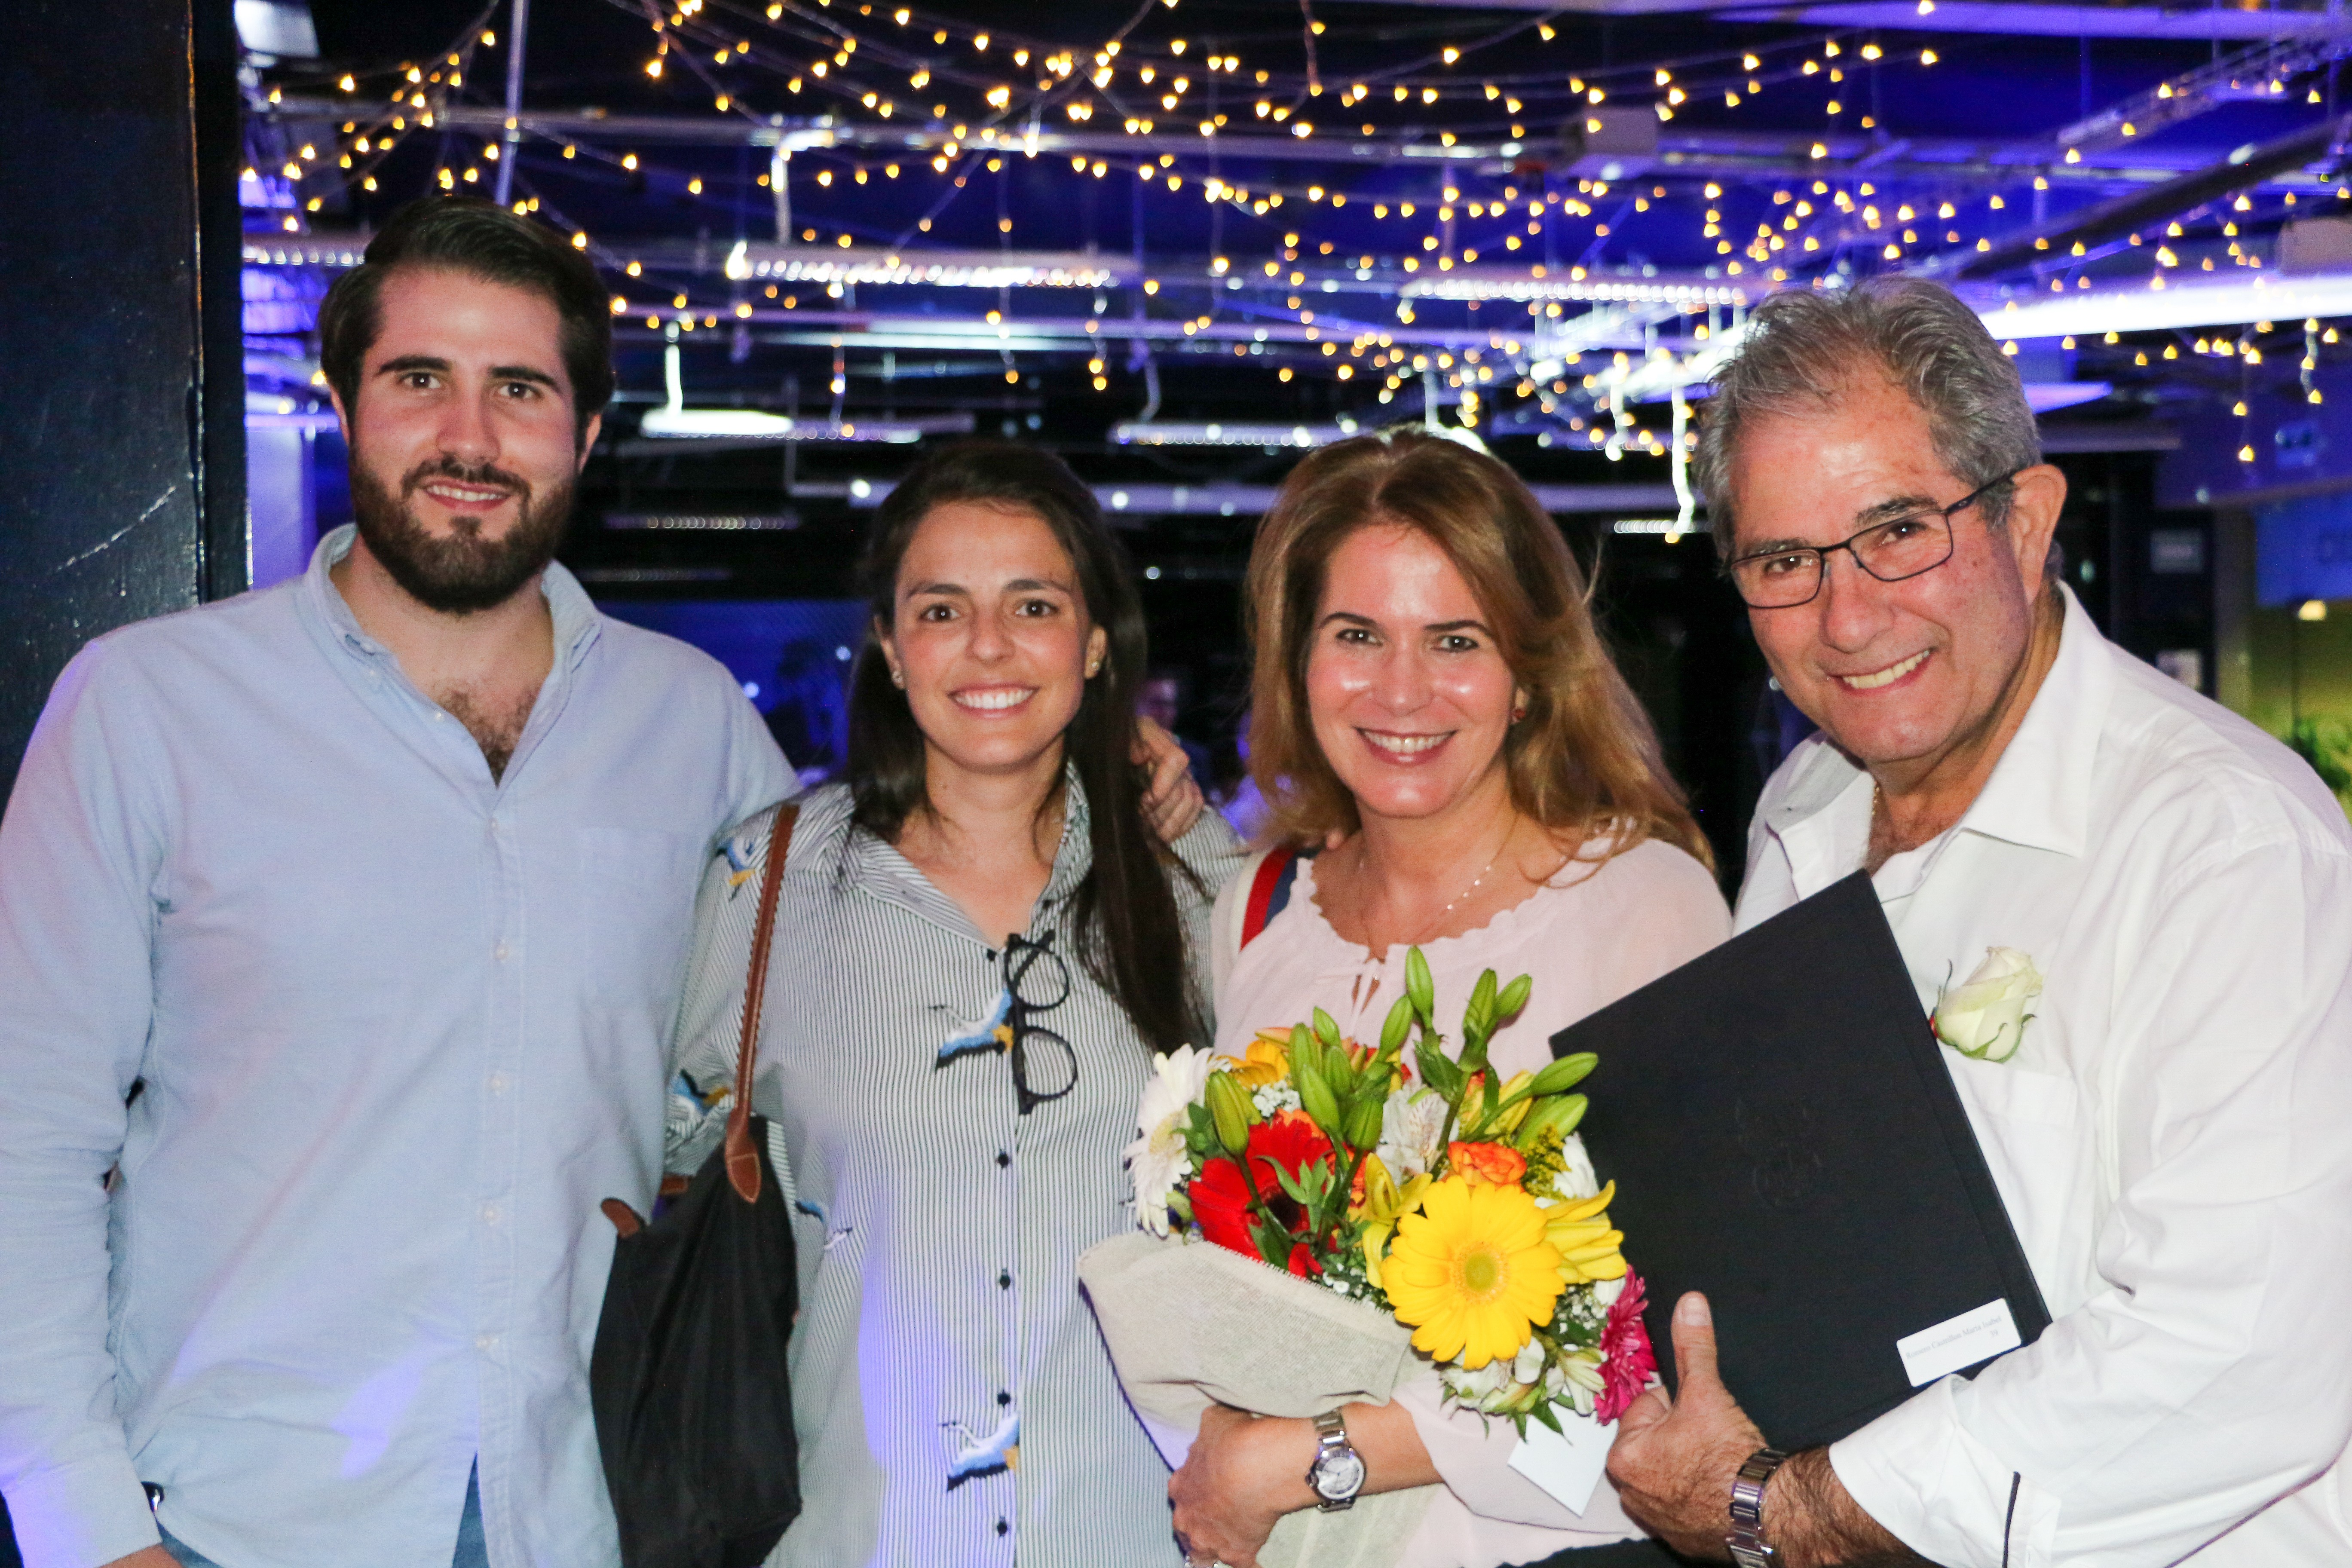 La profesora Maria Isabel Romero y su familia celebrando sus 25 años de trayectoria.